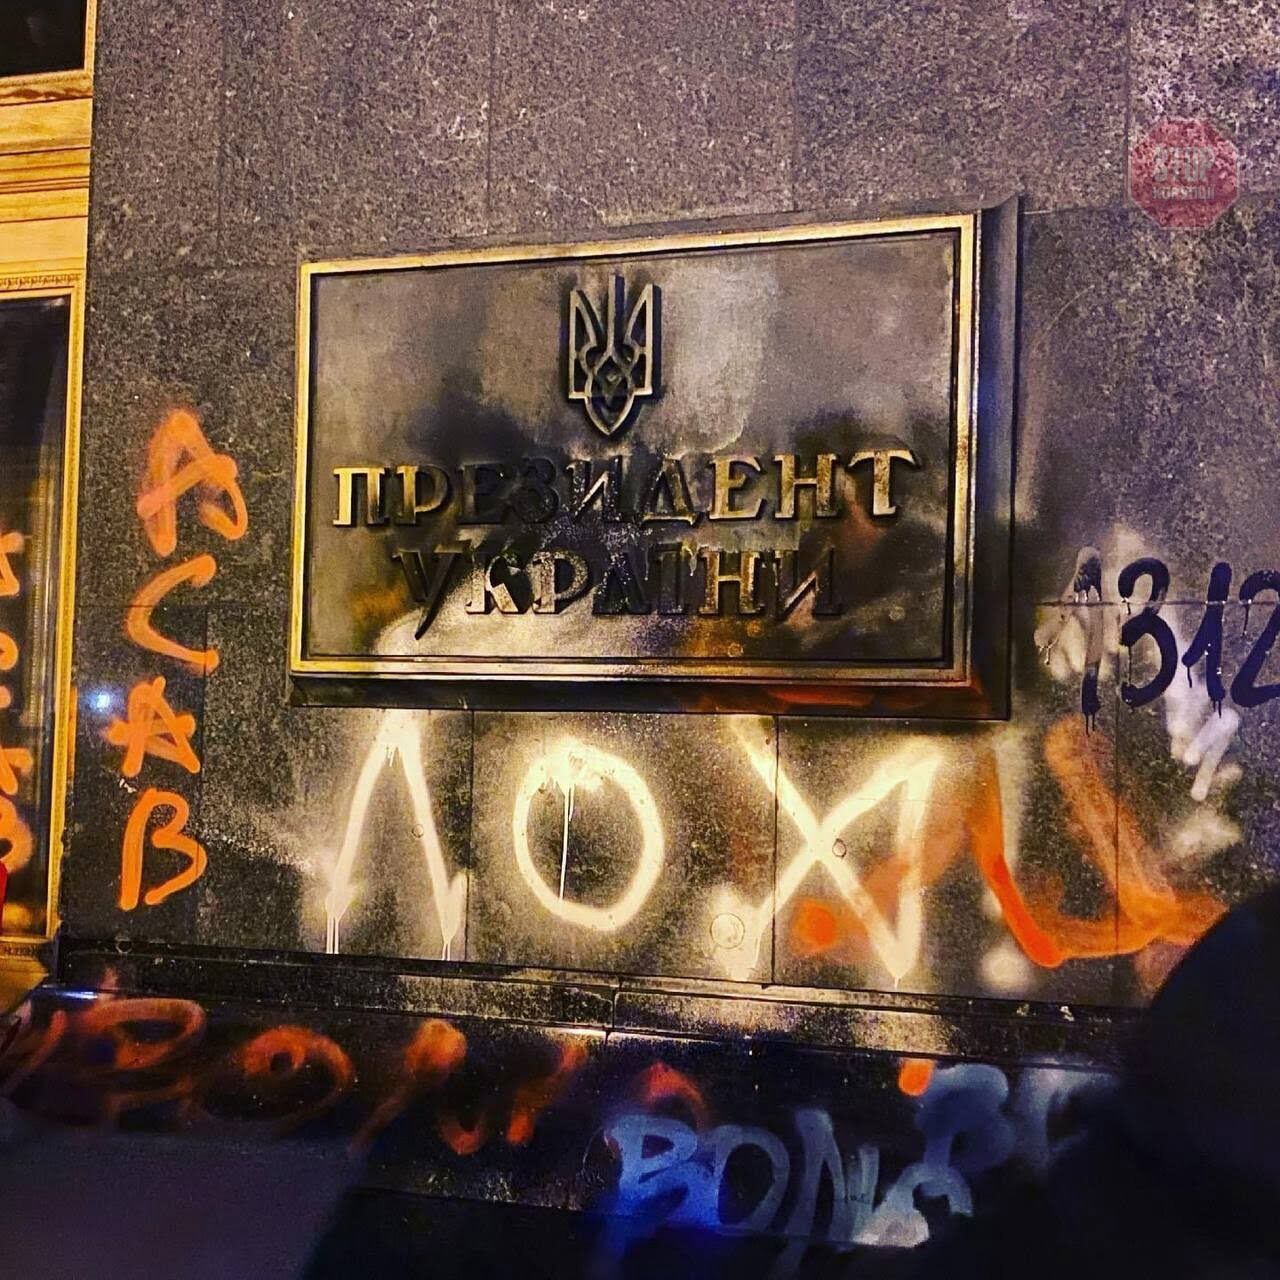 Акція на підтримку Стерненка: мітингувальники закидали будівлю ОП димовими шашками